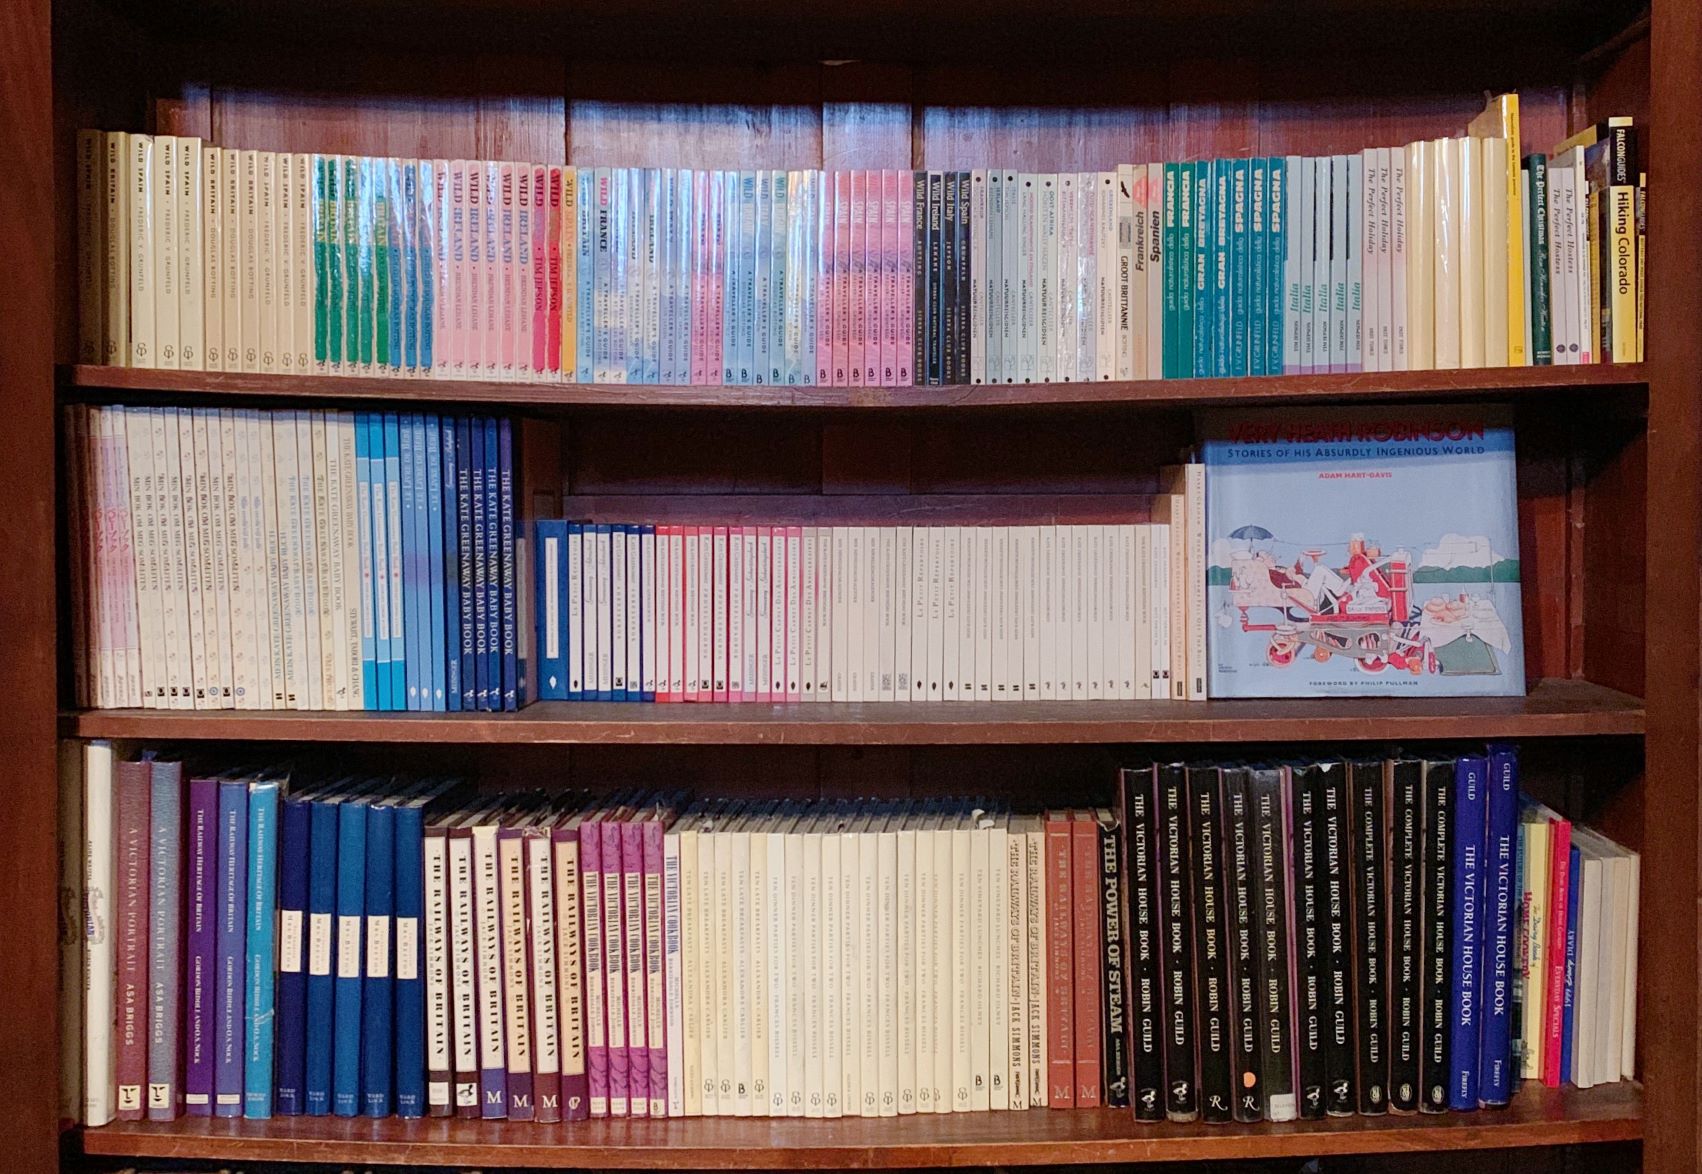 Photograph of Sheldrake Press books on shelves.